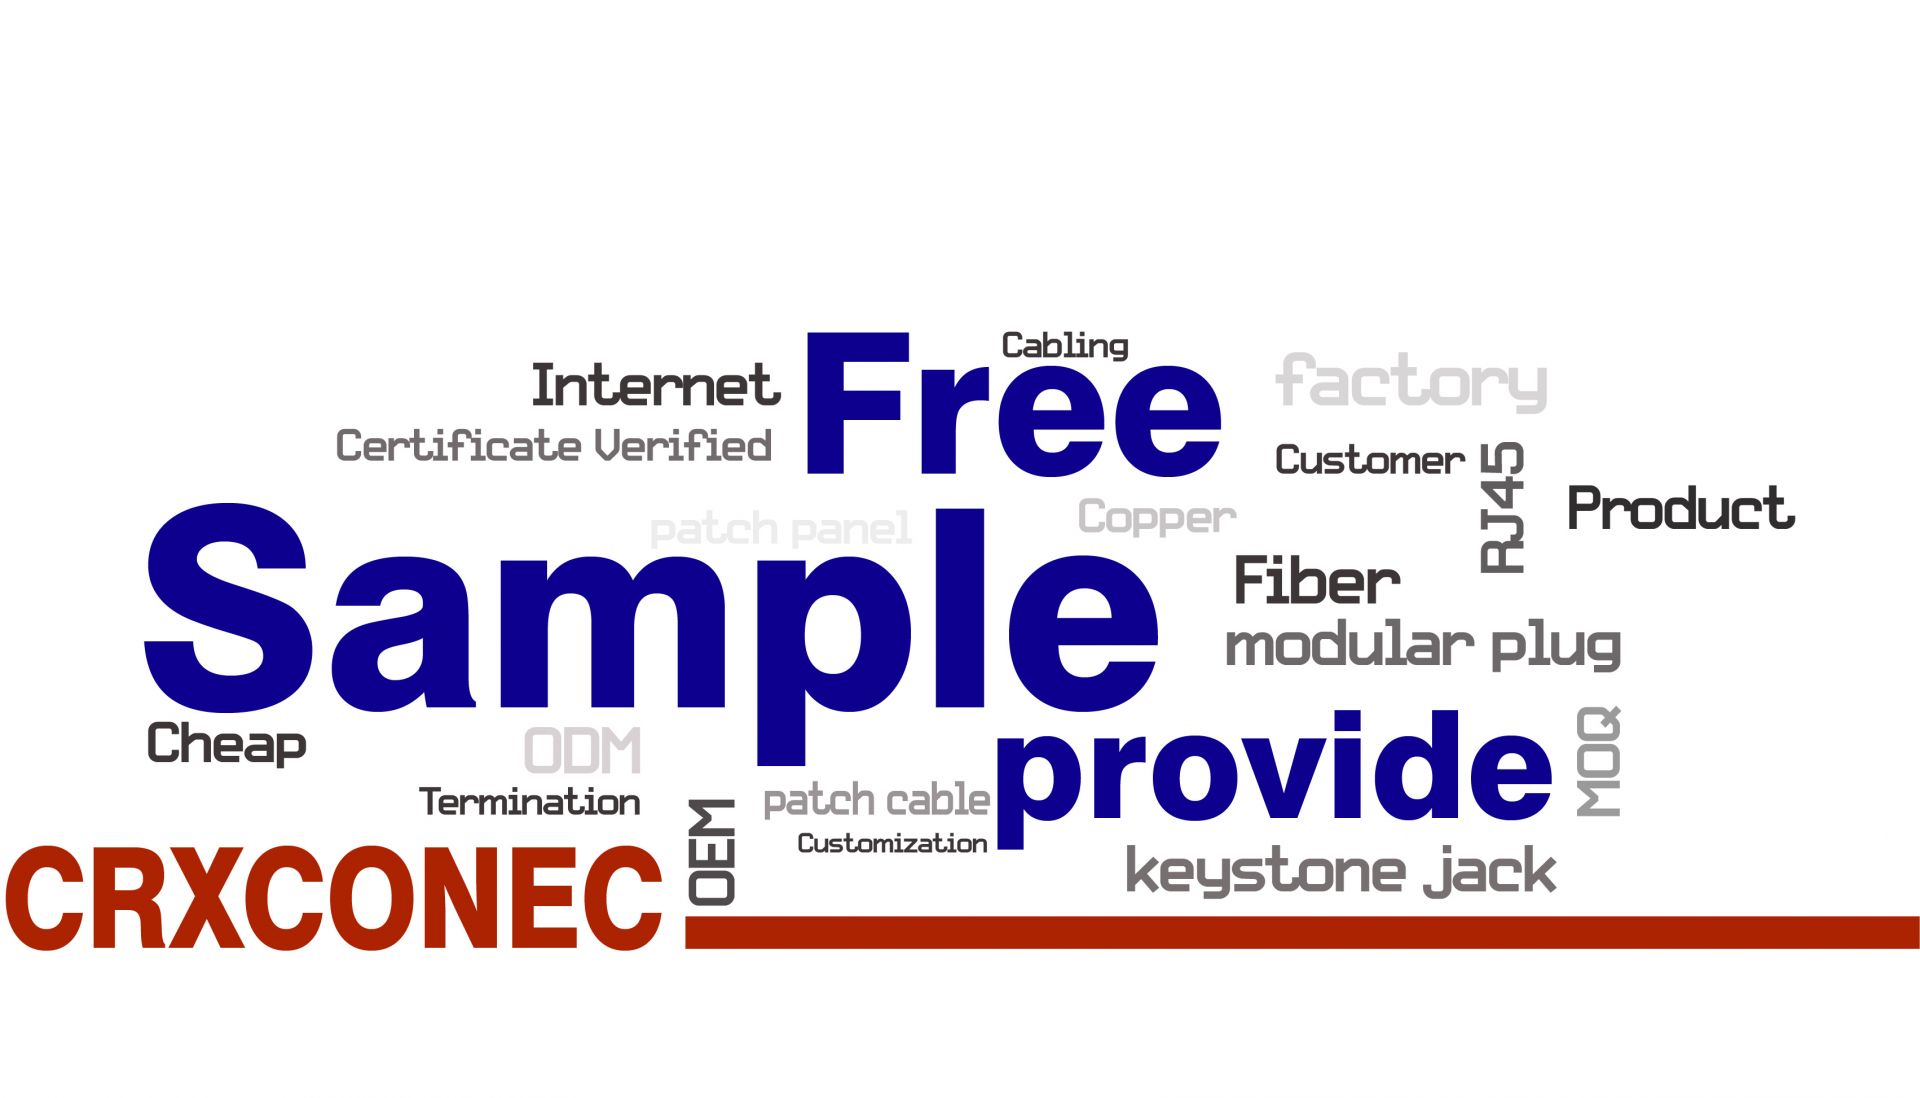 Contáctenos para obtener muestras gratuitas de cables de conexión RJ45 keystone jack